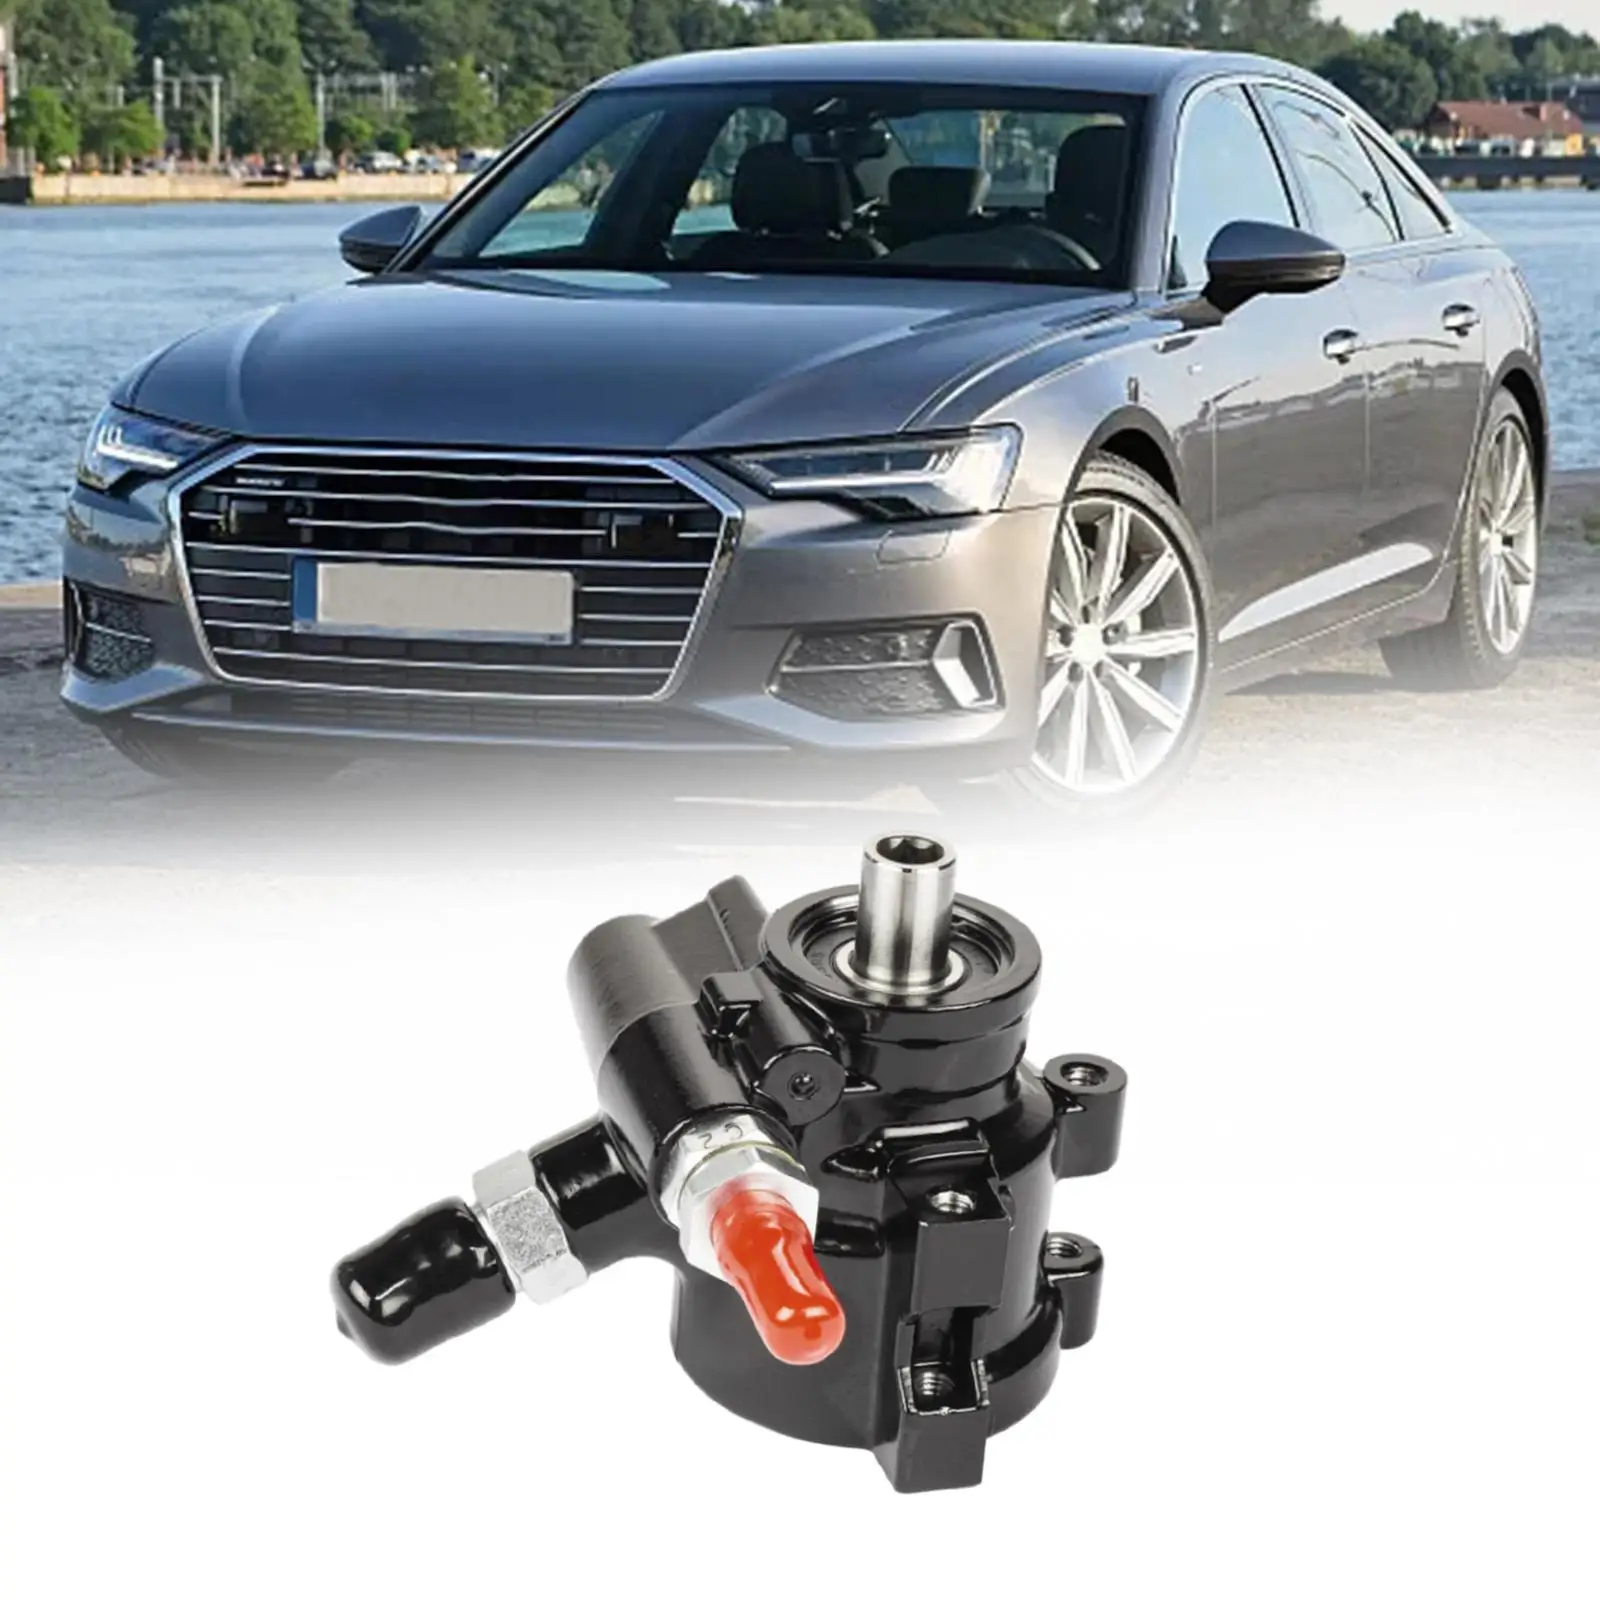 Power Steering Pump Car Accessories for Saginaw TC Type 2 Premium